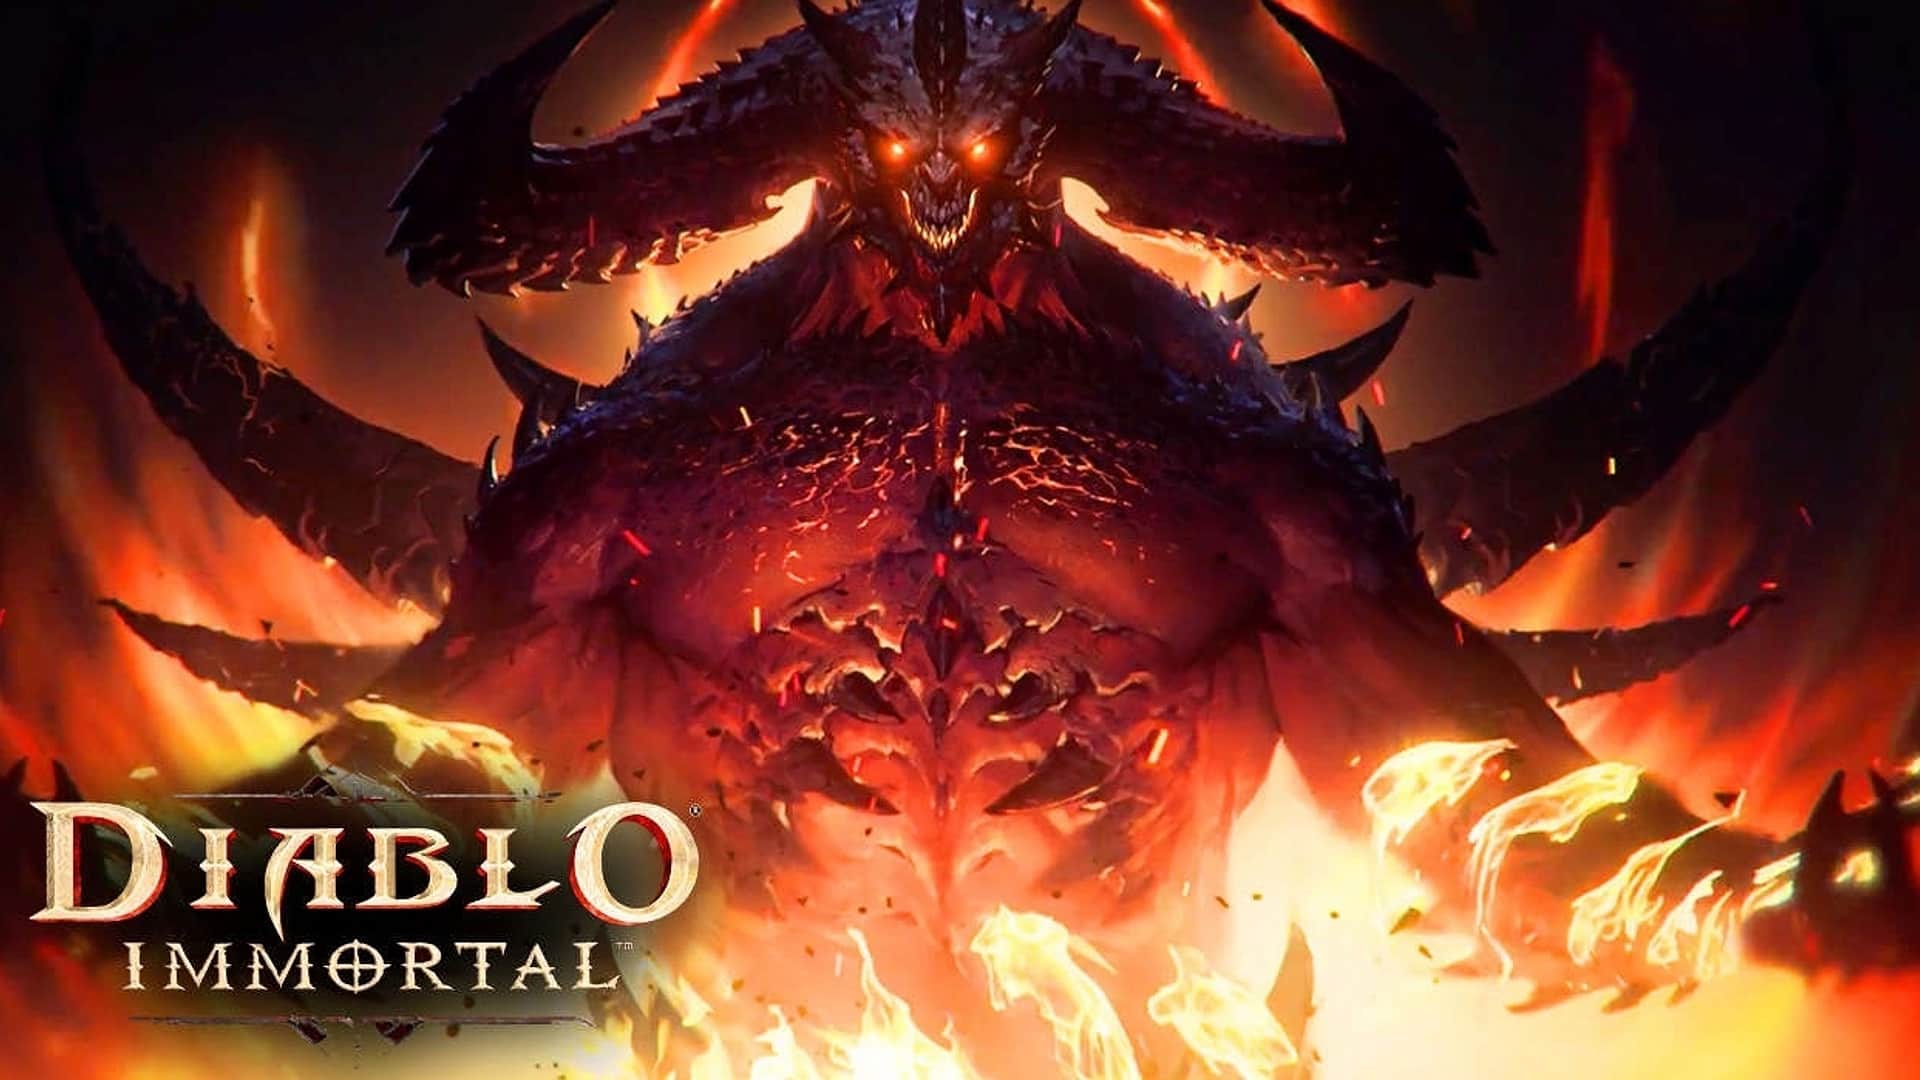 Diablo 4 no diablo immortal for mobile